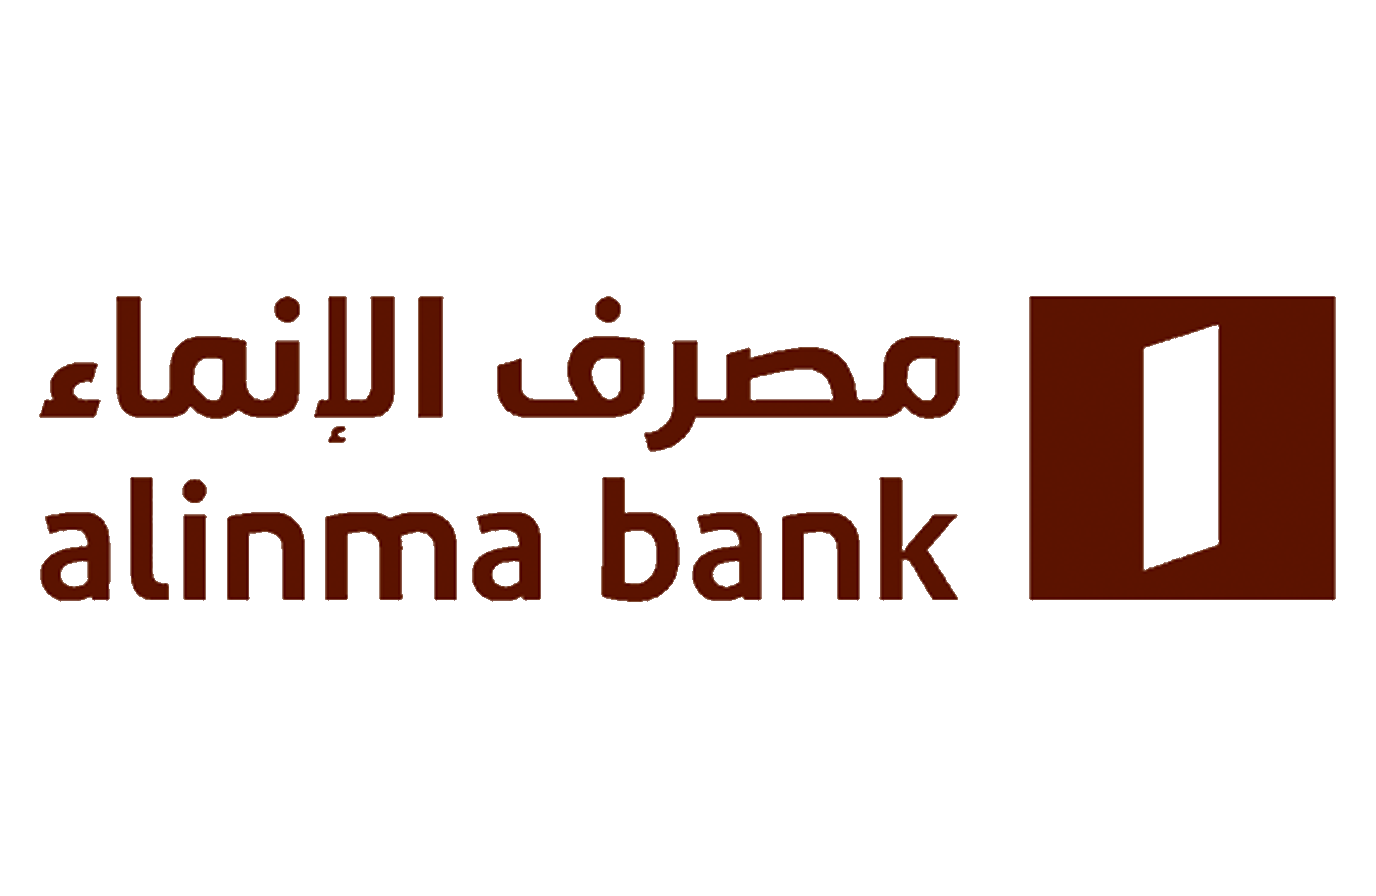 Alinma Bank